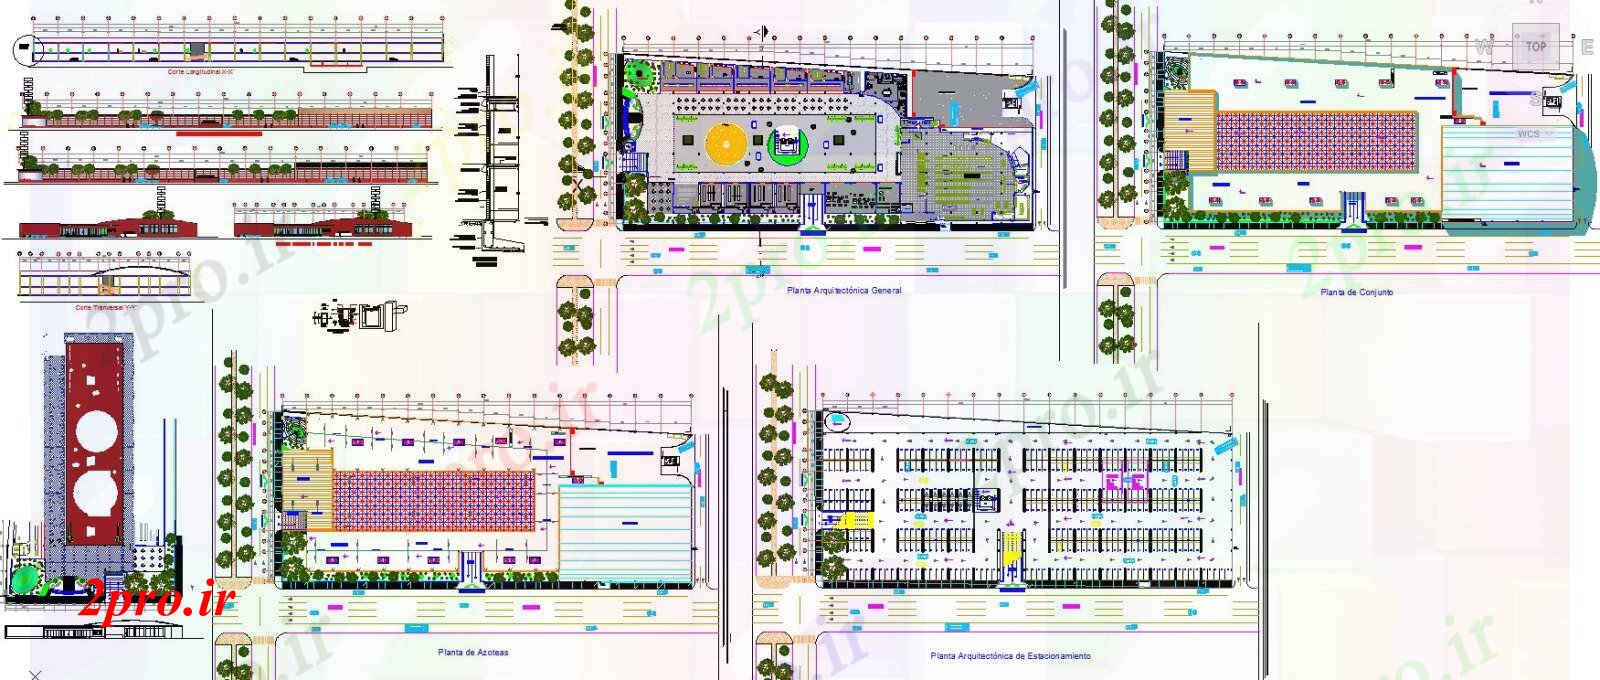 دانلود نقشه هایپر مارکت - مرکز خرید - فروشگاه بازار پروژه های معماری جزئیات 74 در 178 متر (کد55946)